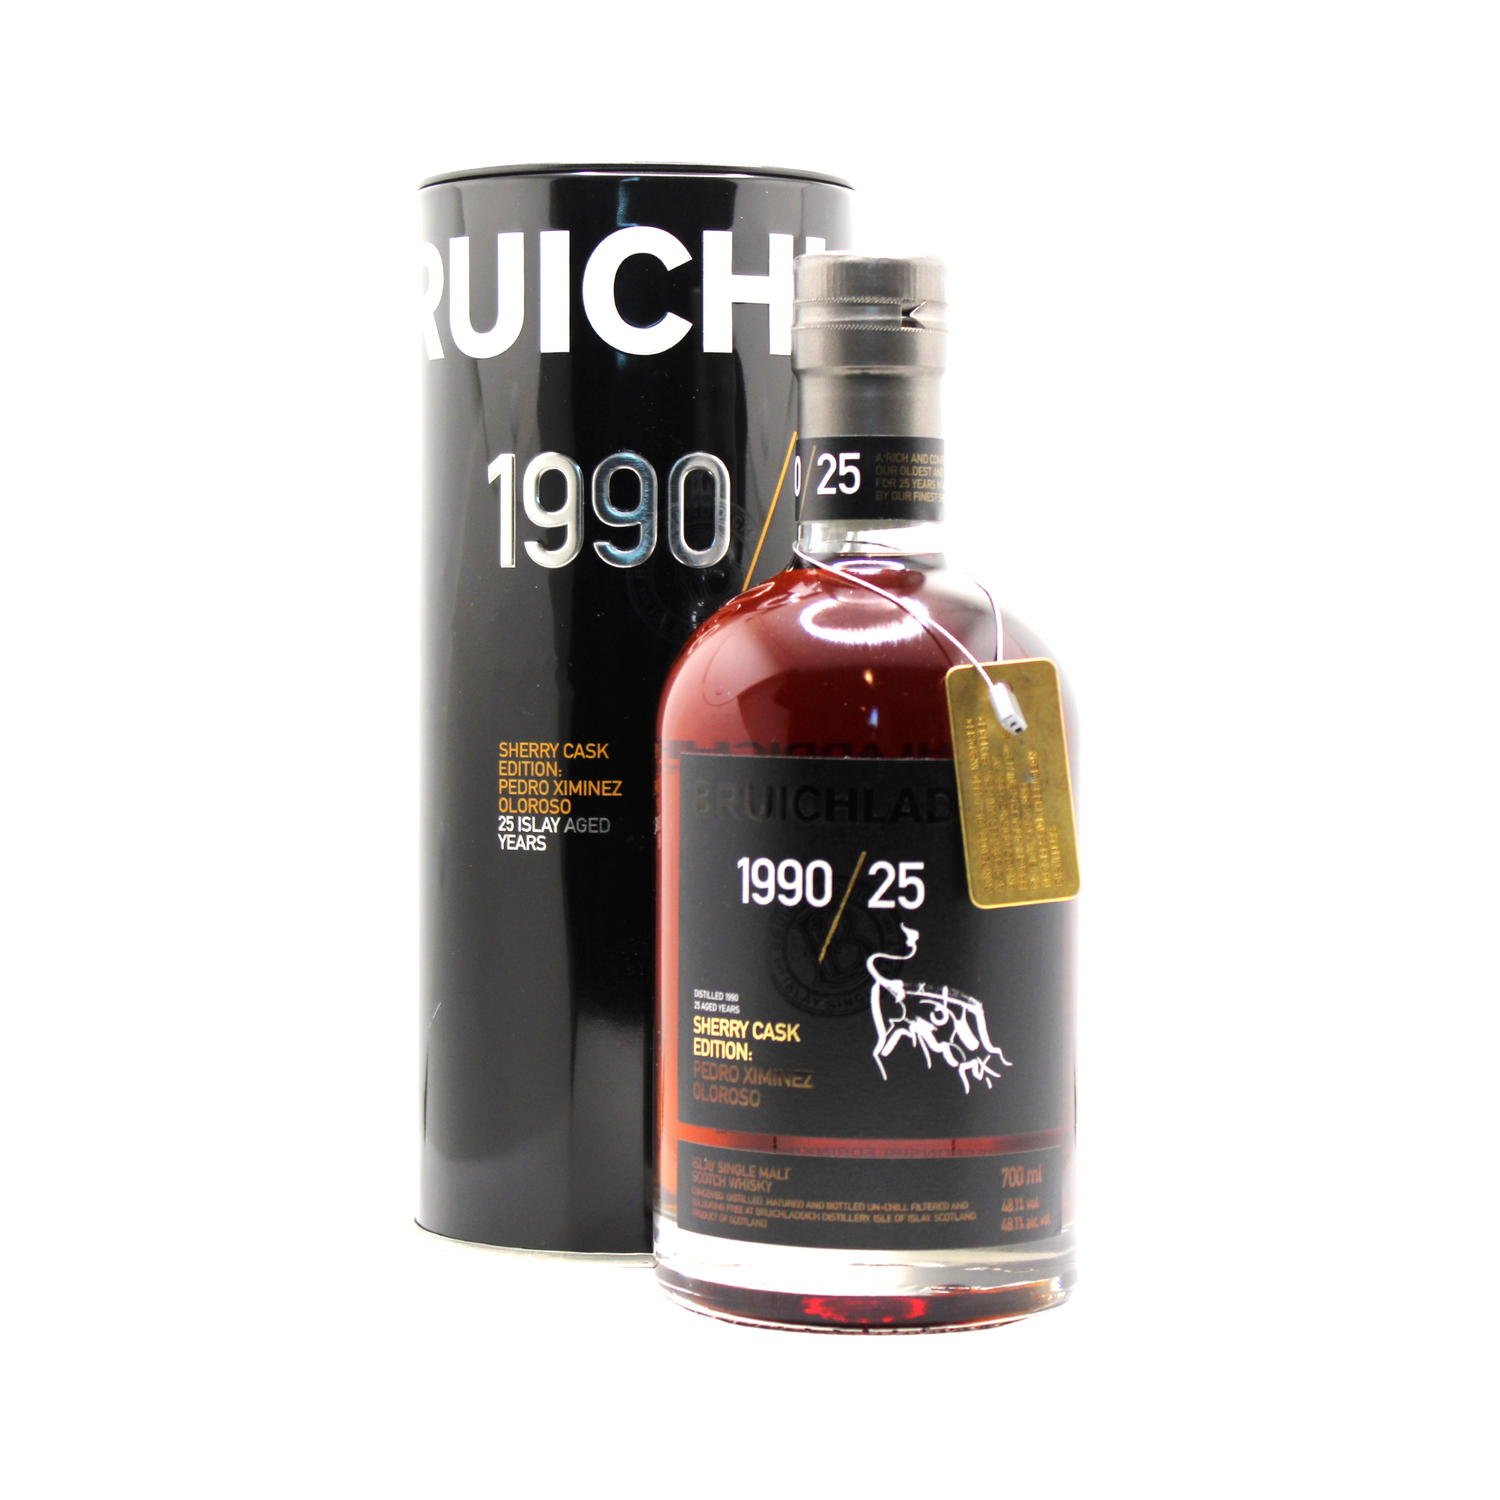 Bruichladdich 25 Y/O Sherry Cask 1990/2016 Single Malt Scotch Whisky